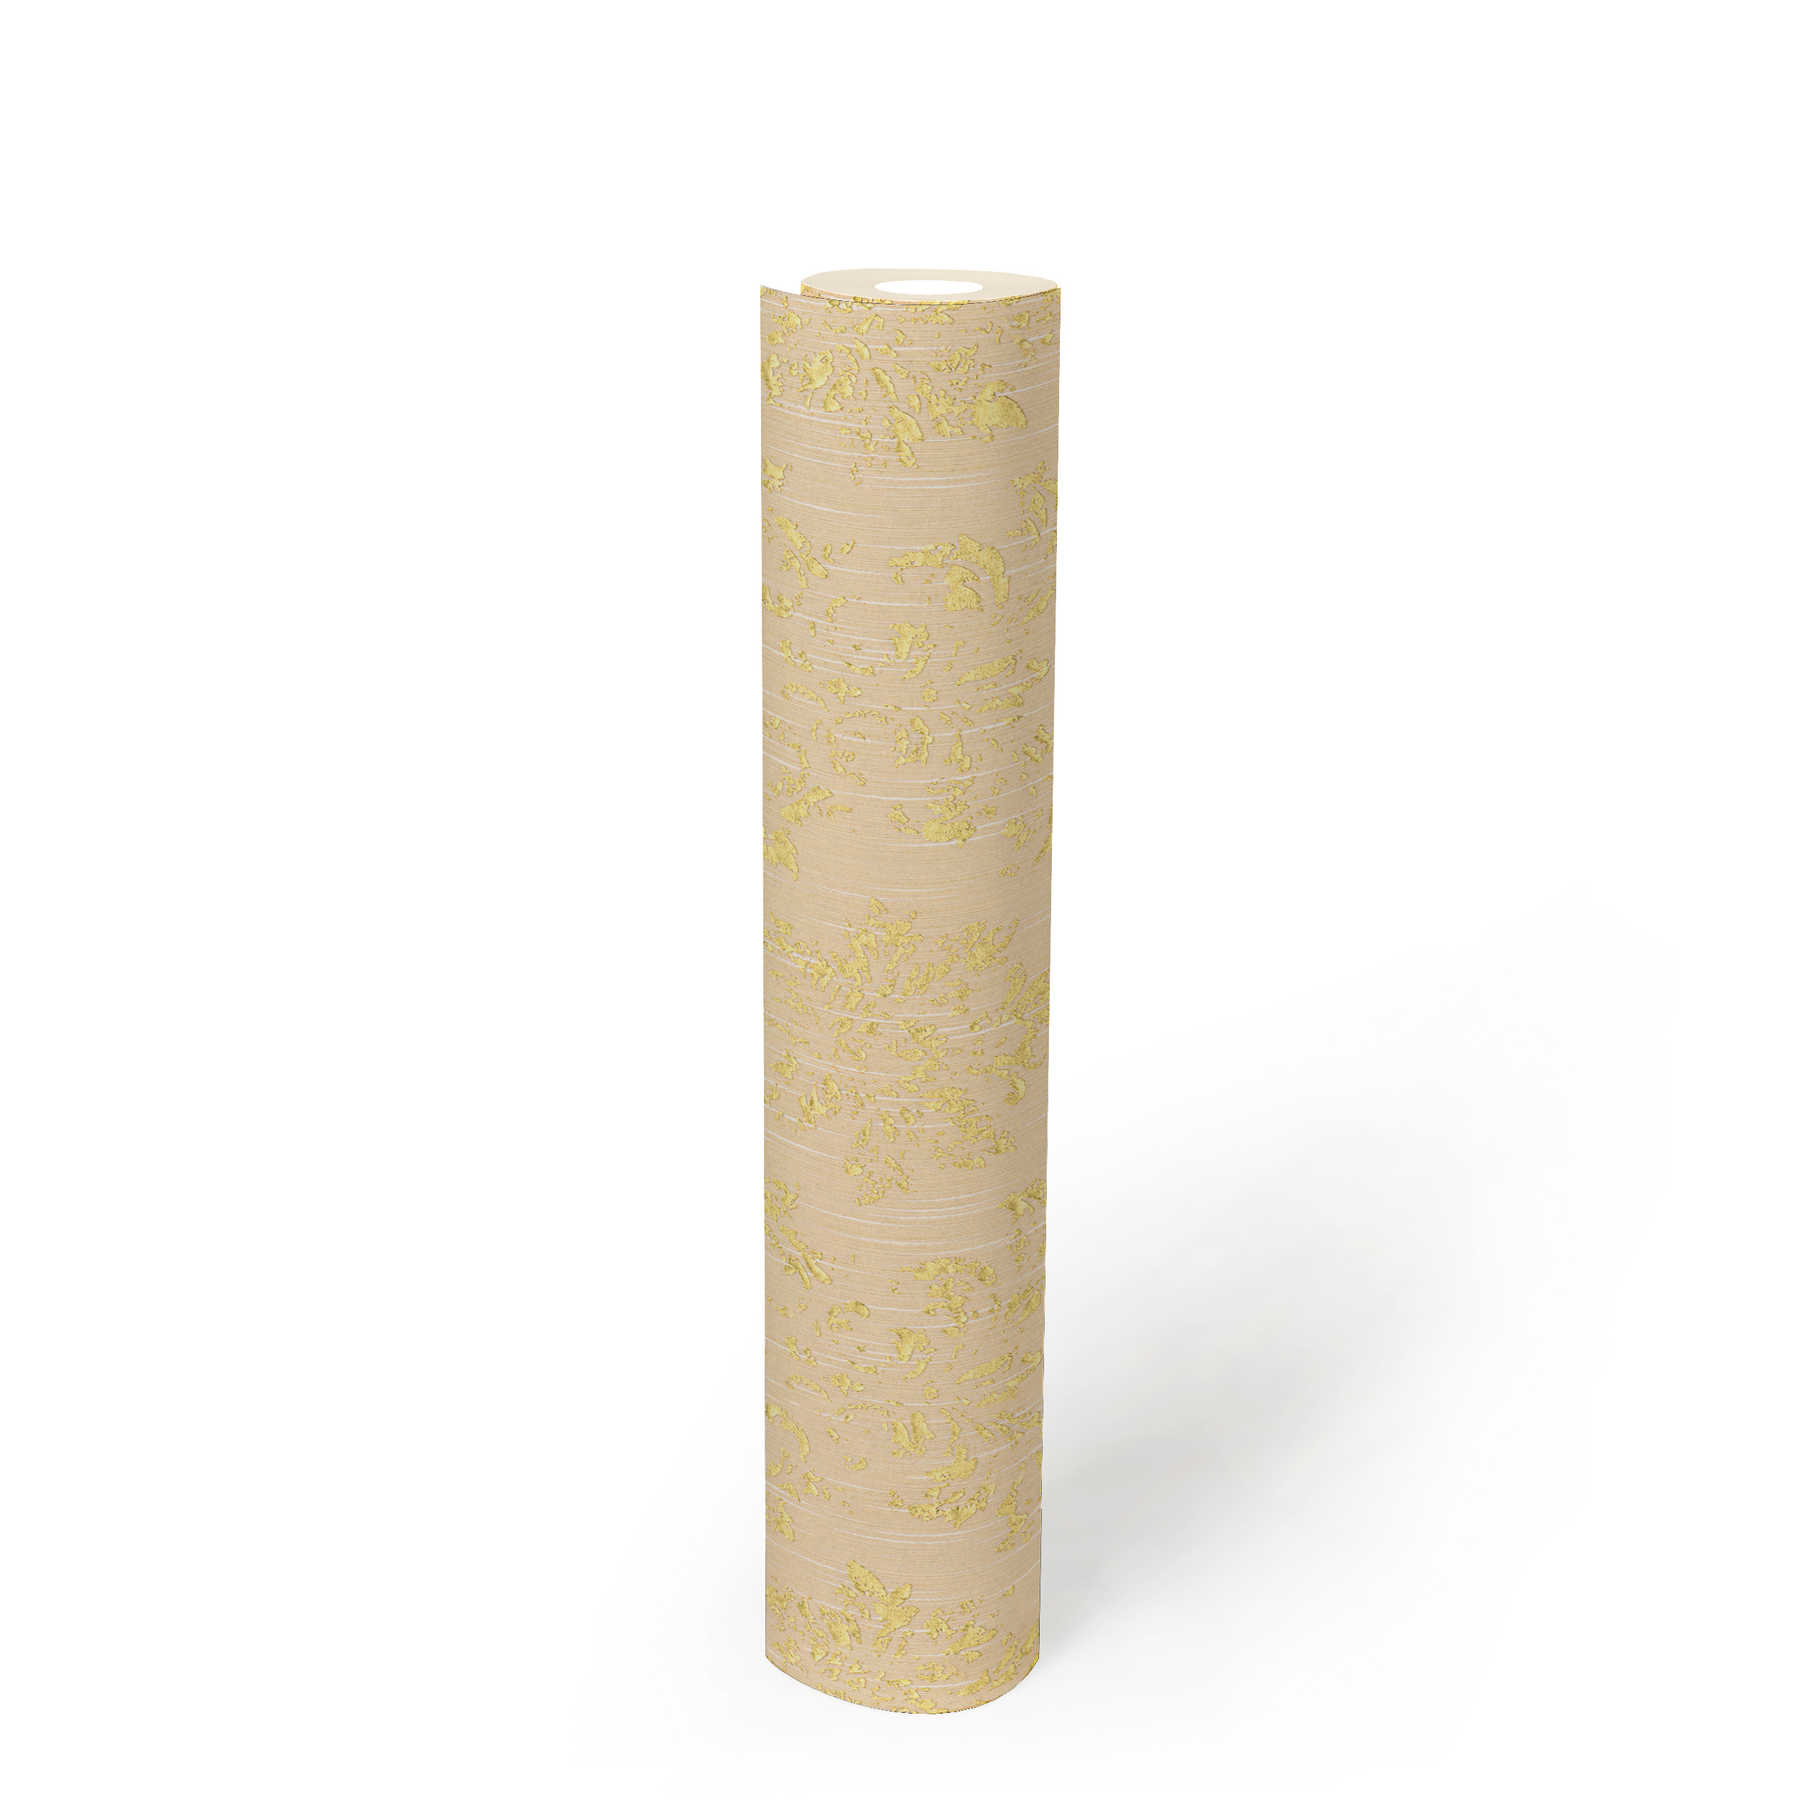             Papier peint avec ornements dorés, aspect usé - crème, or
        